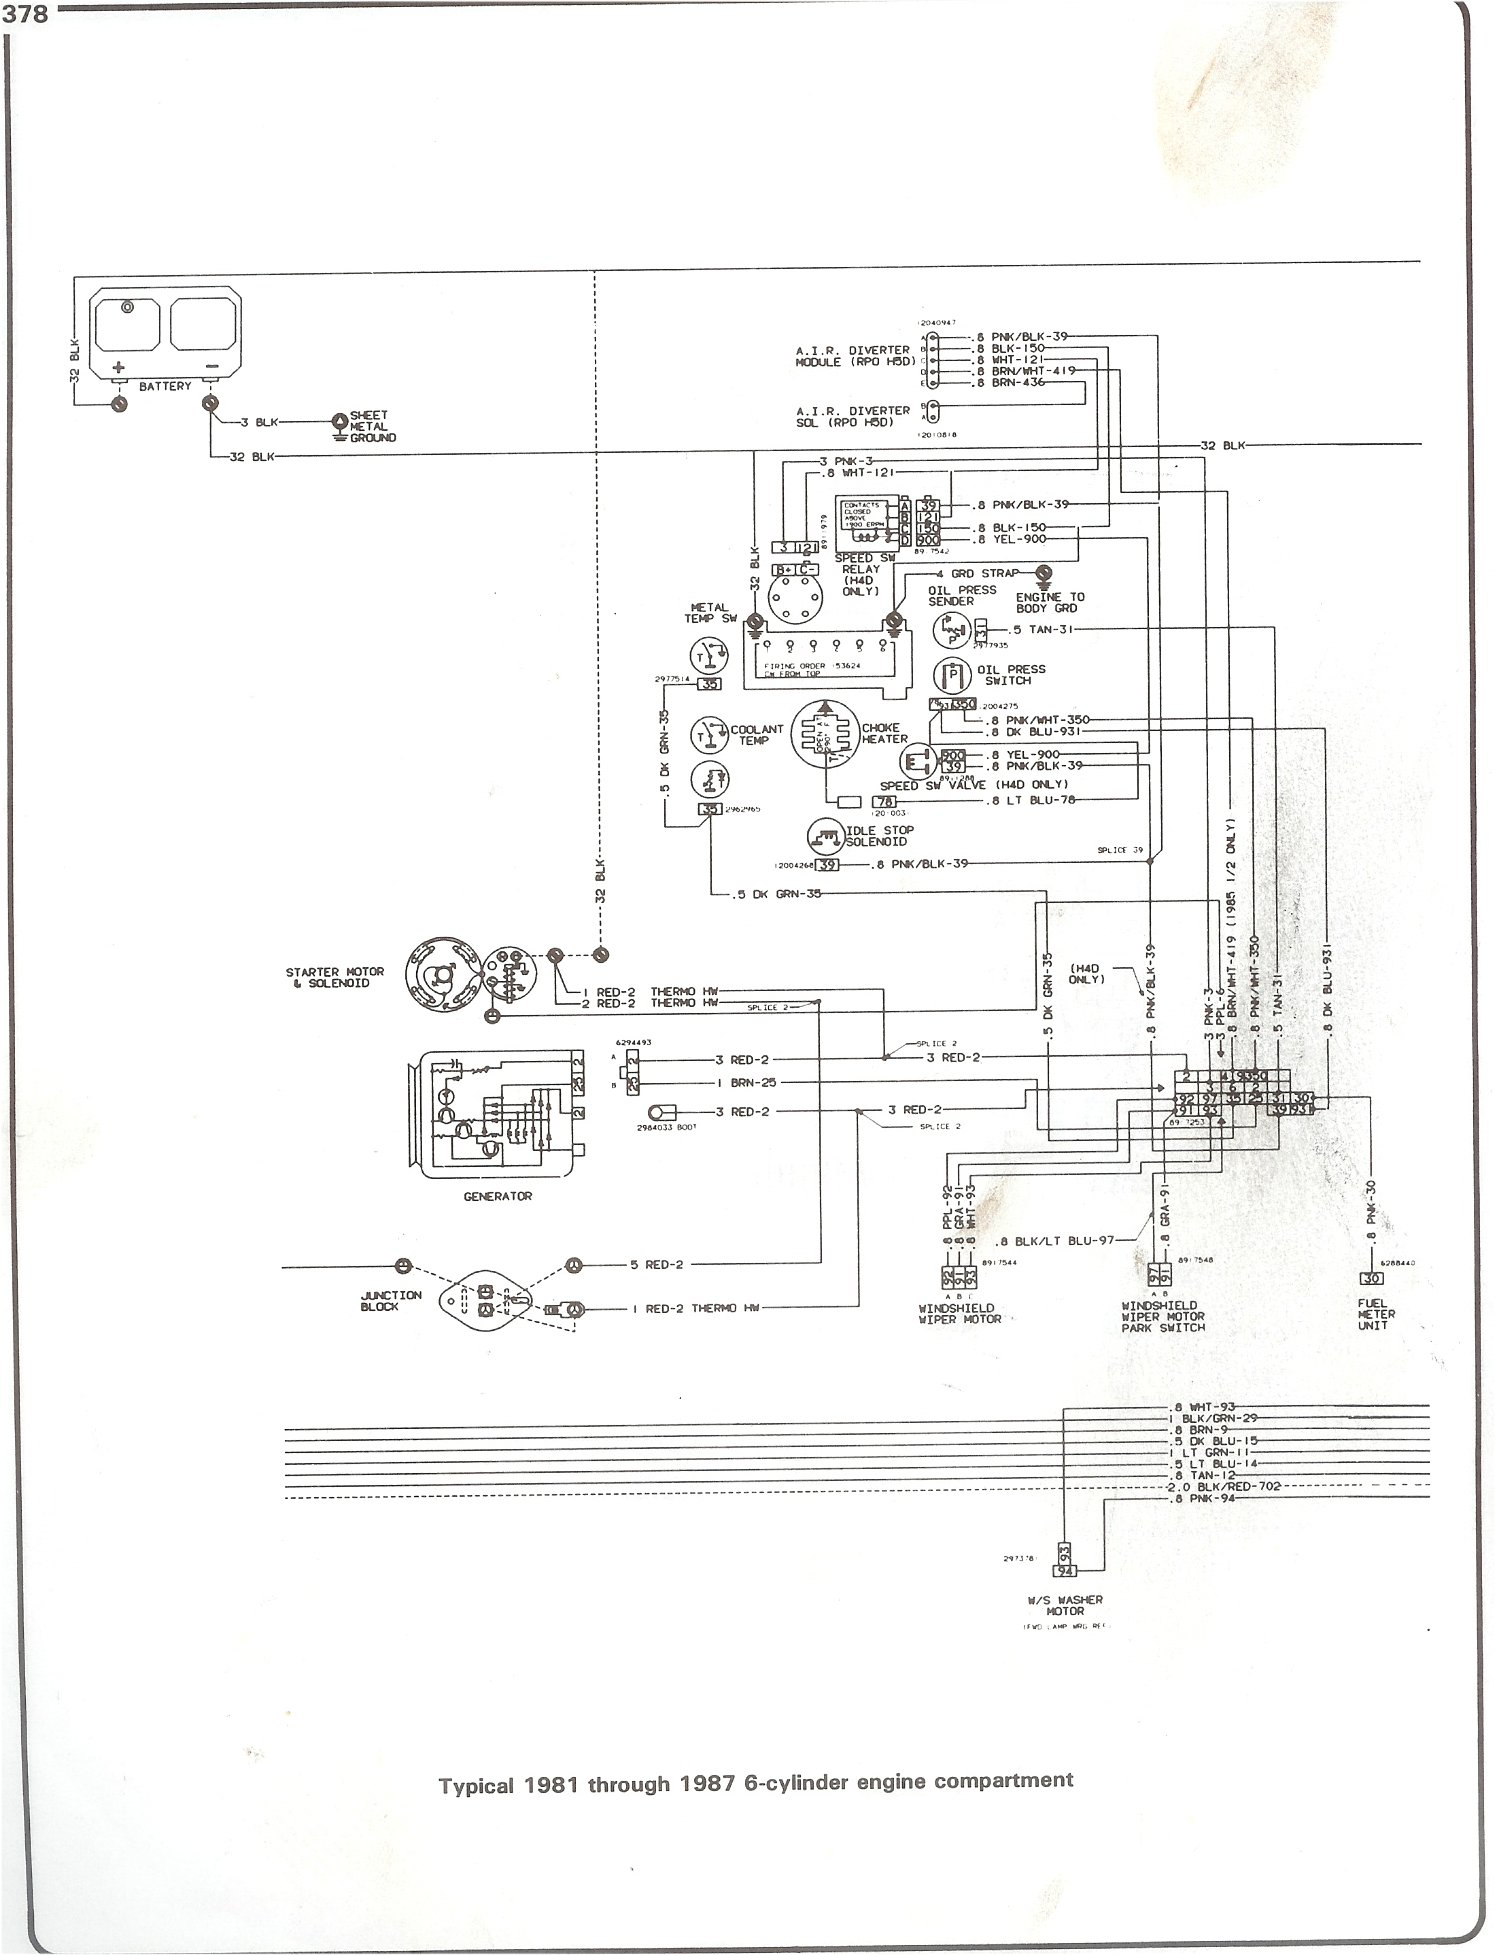 2002 Chevy Tracker Fuel Gauge Wiring | Wiring Diagram - Fuel Gauge Wiring Diagram Chevy